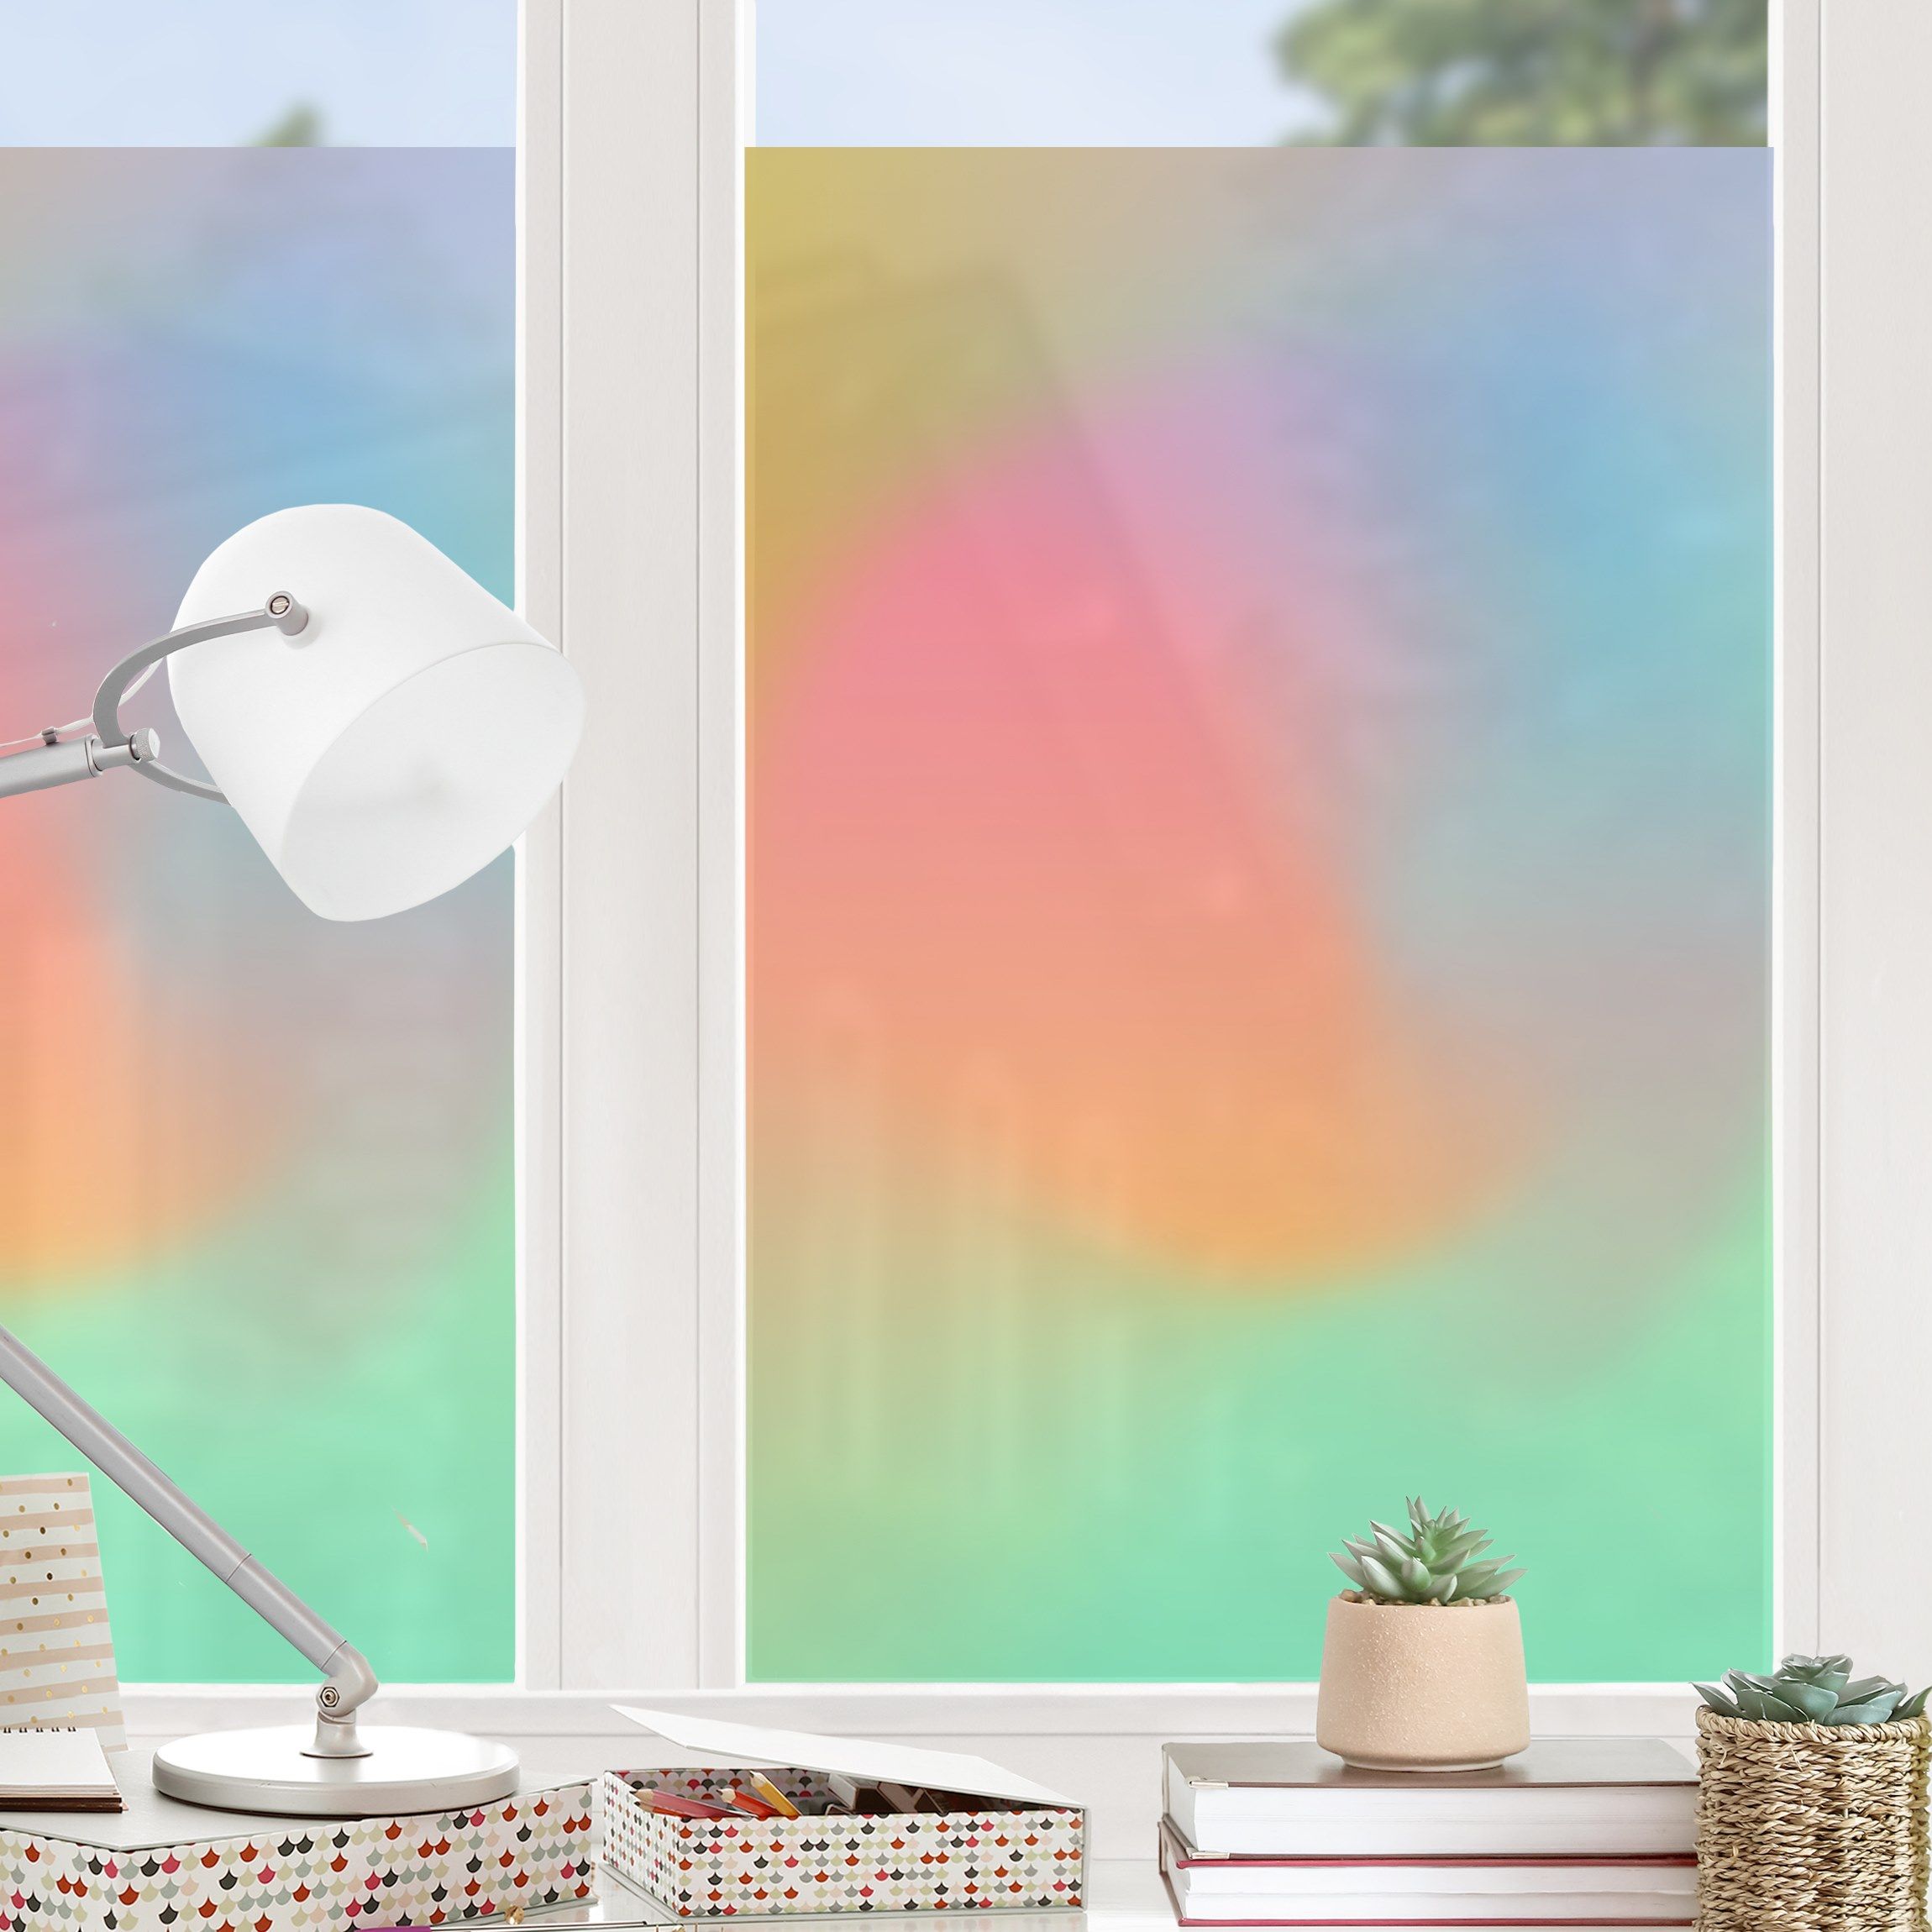 Fensterfolie - Sichtschutz - Regenbogenfarben - Fensterbilder